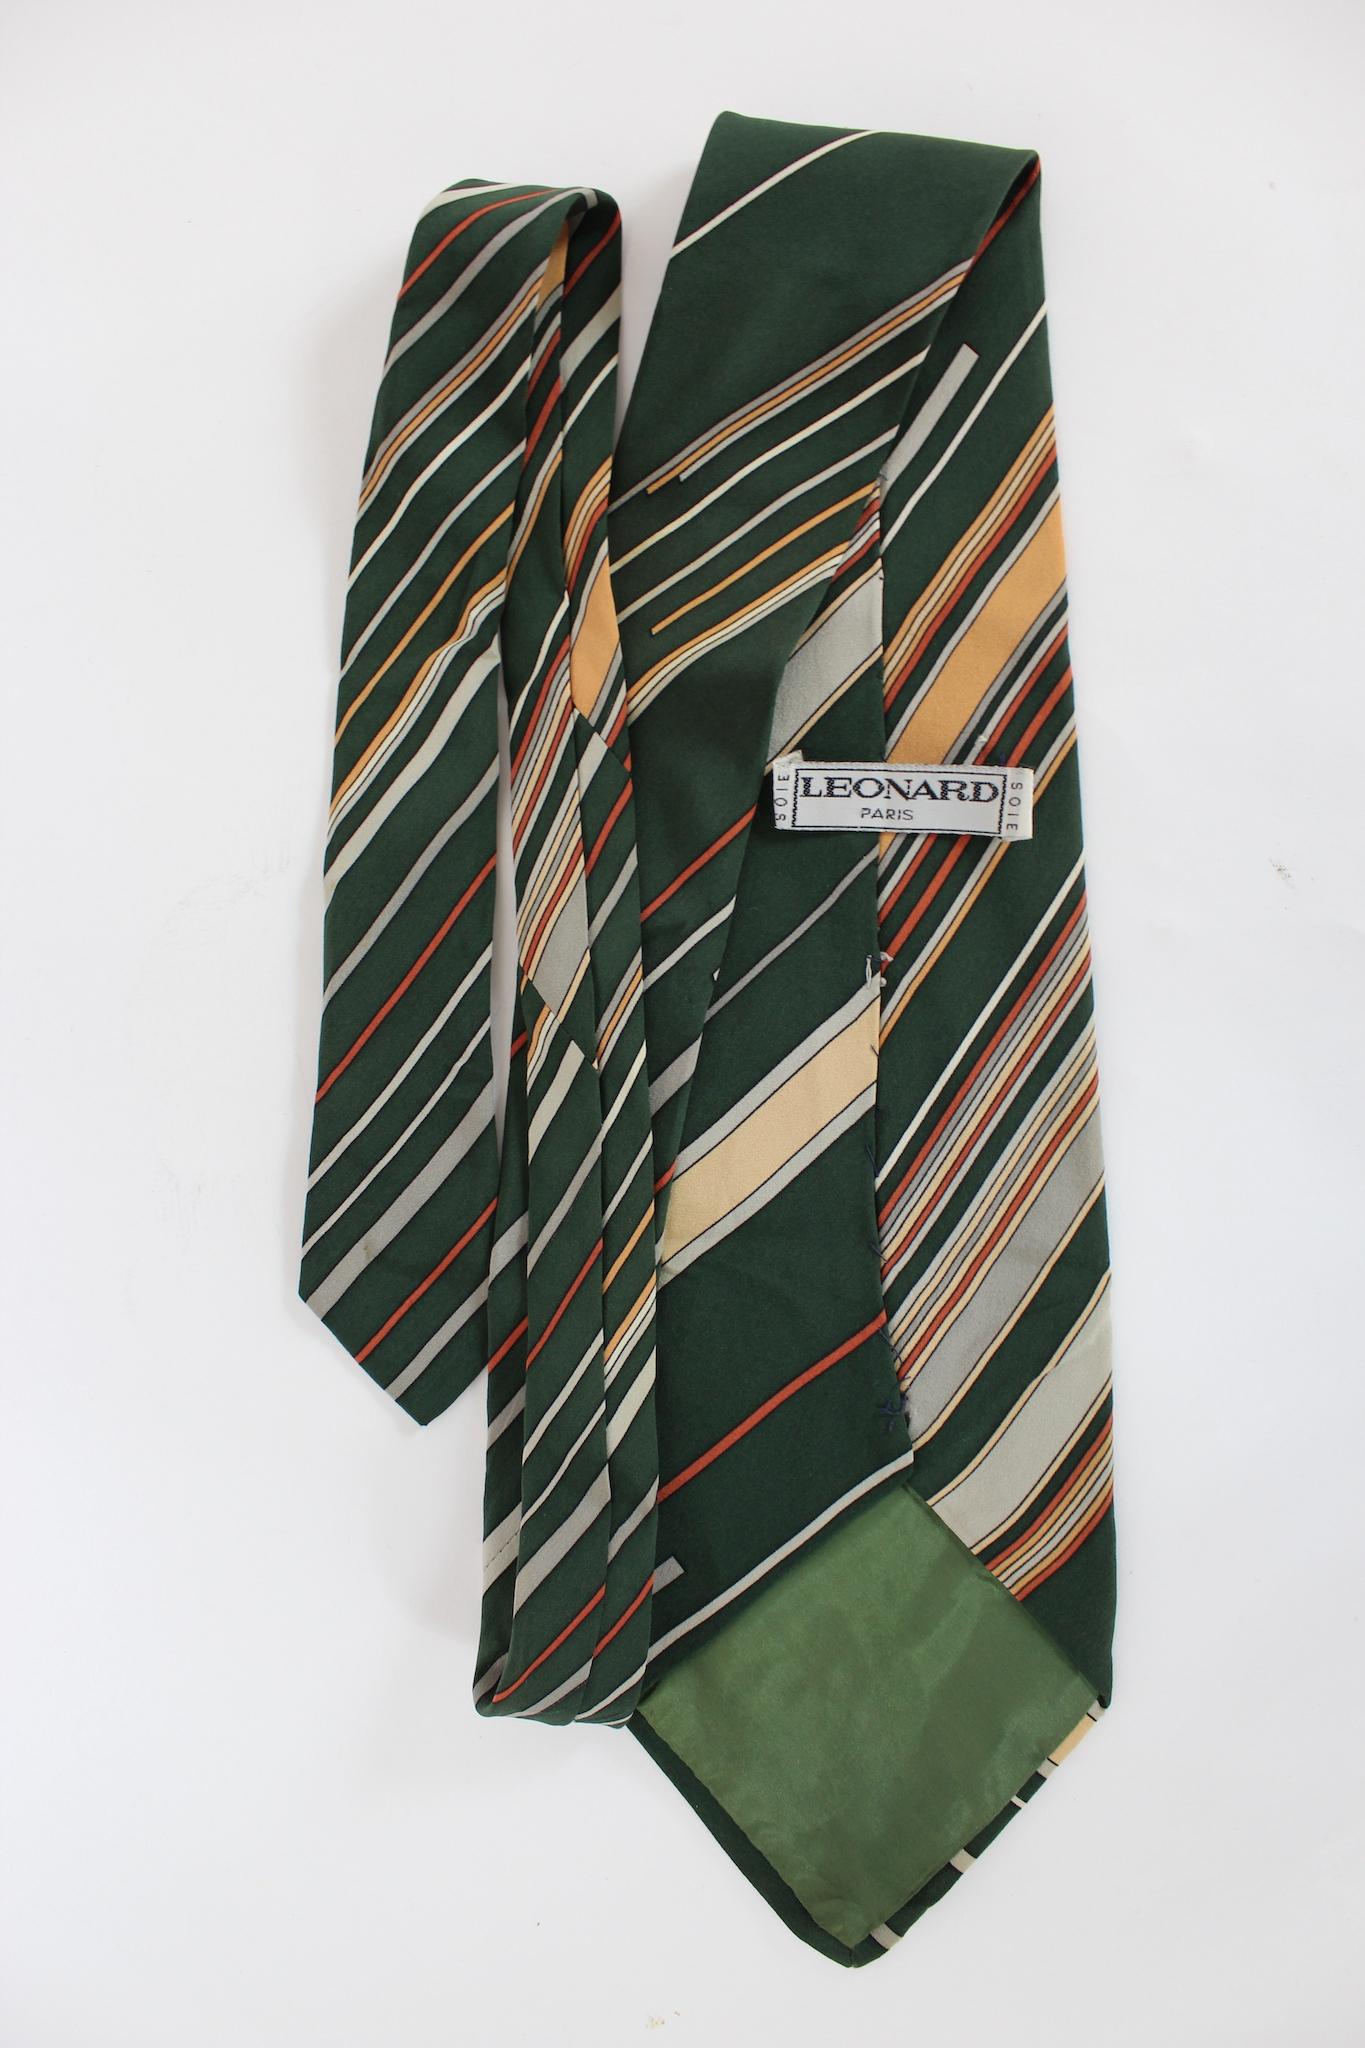 Leonard Paris Krawatte aus den 80ern. Grün und beige Farbe mit gestreiftem Muster. 100% Seide. Hergestellt in Frankreich.

Länge: 147 cm
Breite: 11 cm
